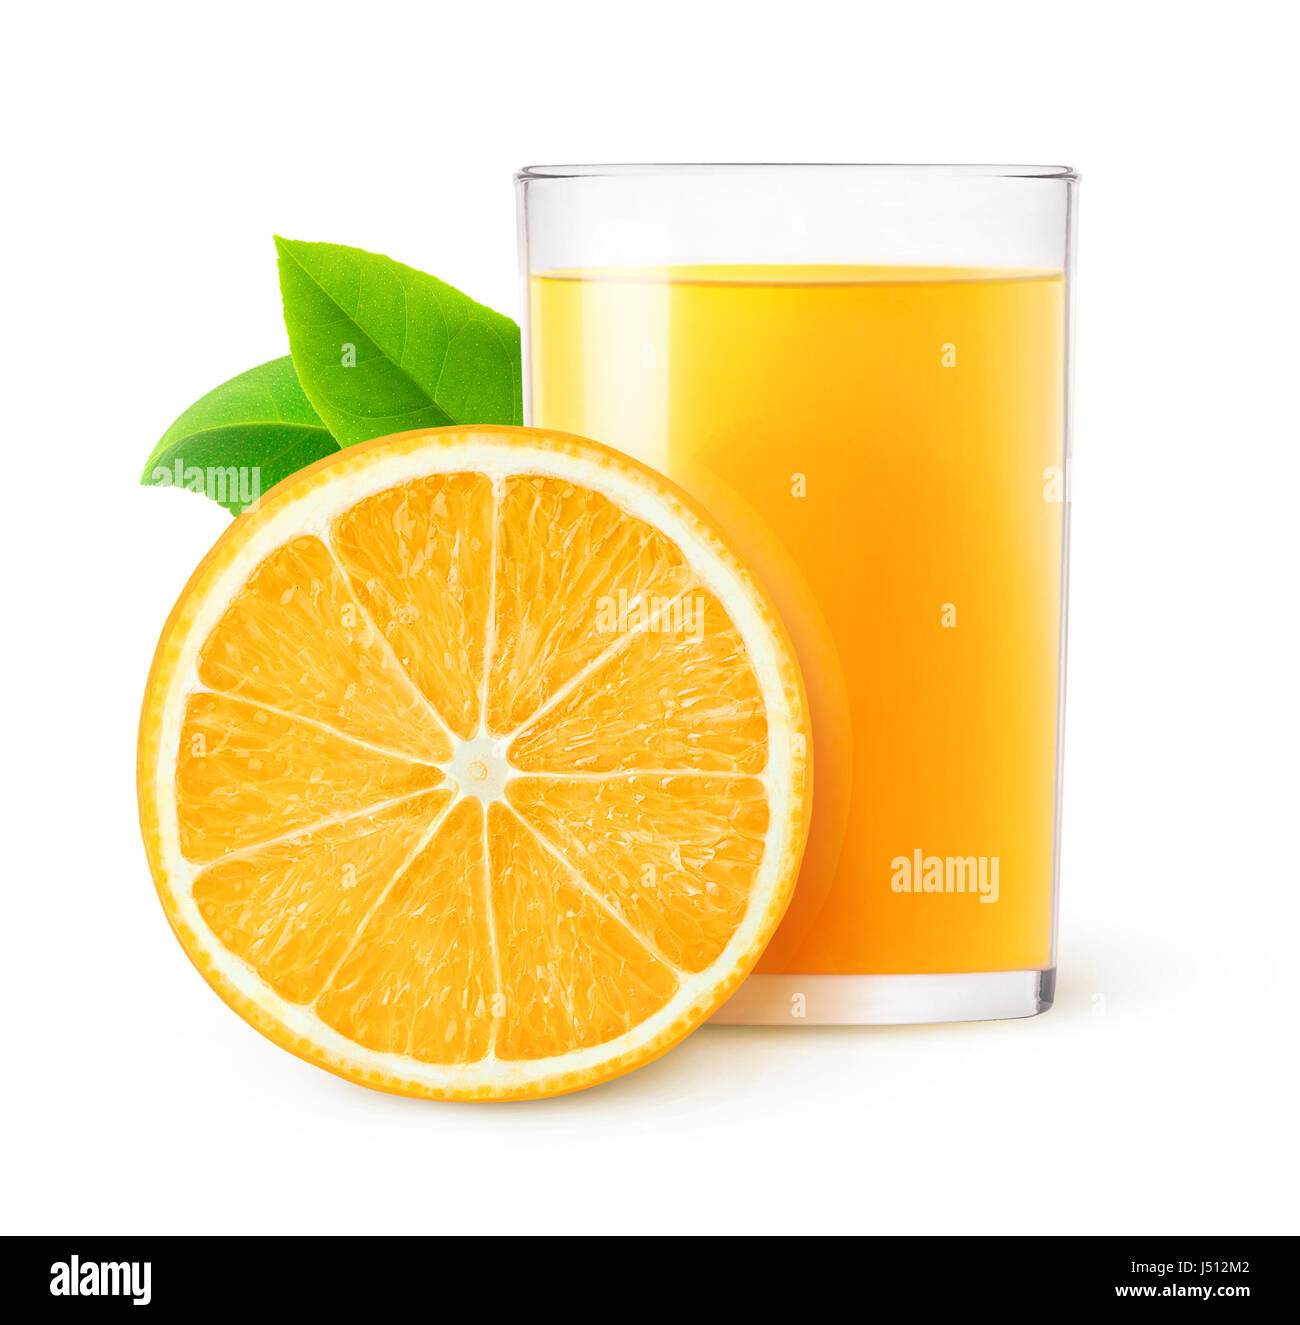 Vaso de jugo de naranja fotografías e imágenes de alta resolución - Alamy